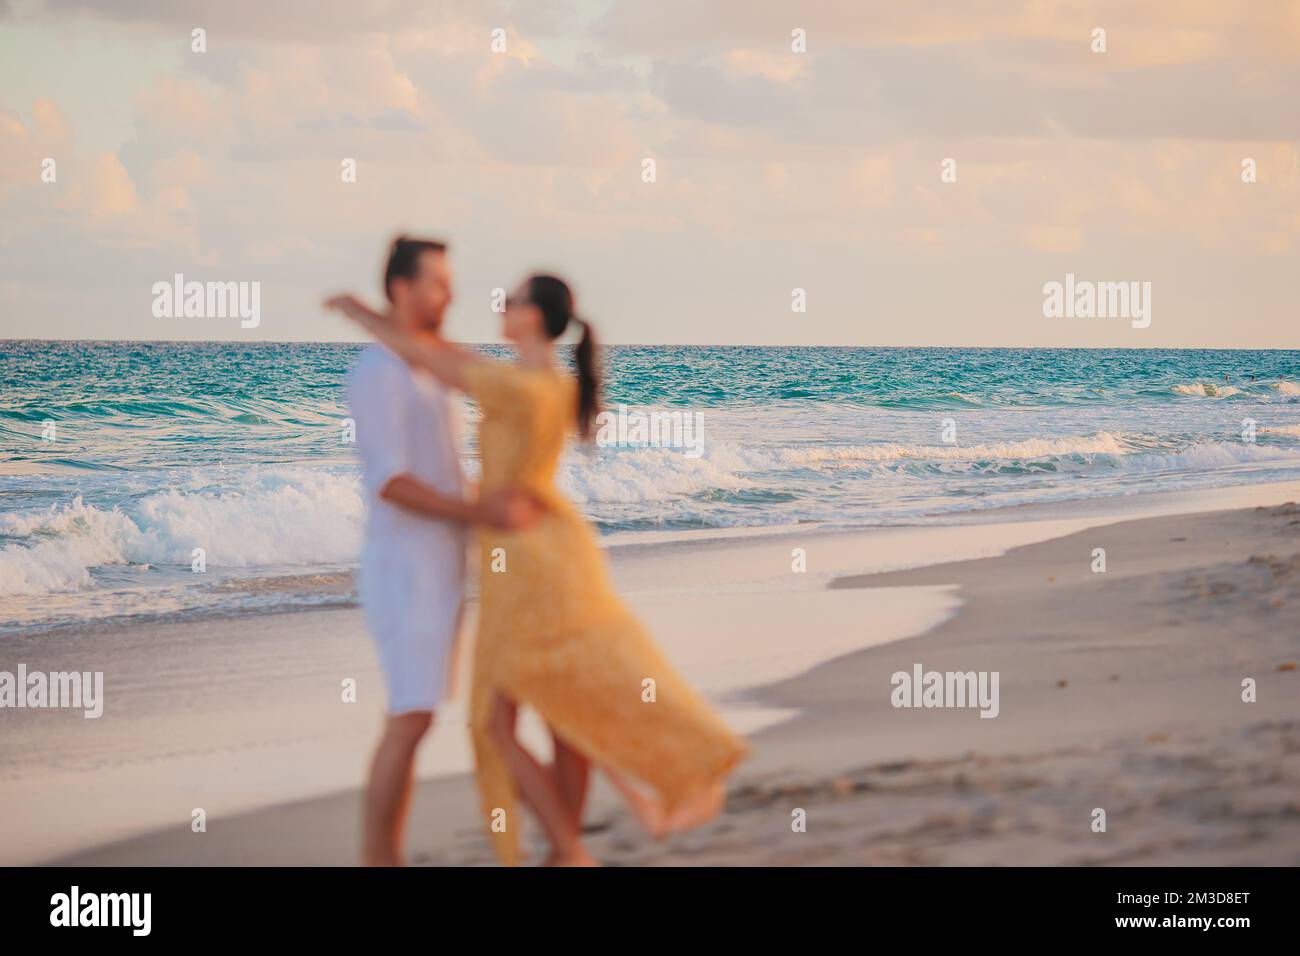 Una giovane coppia trascorre del tempo insieme in spiaggia. Foto sfocata Foto Stock